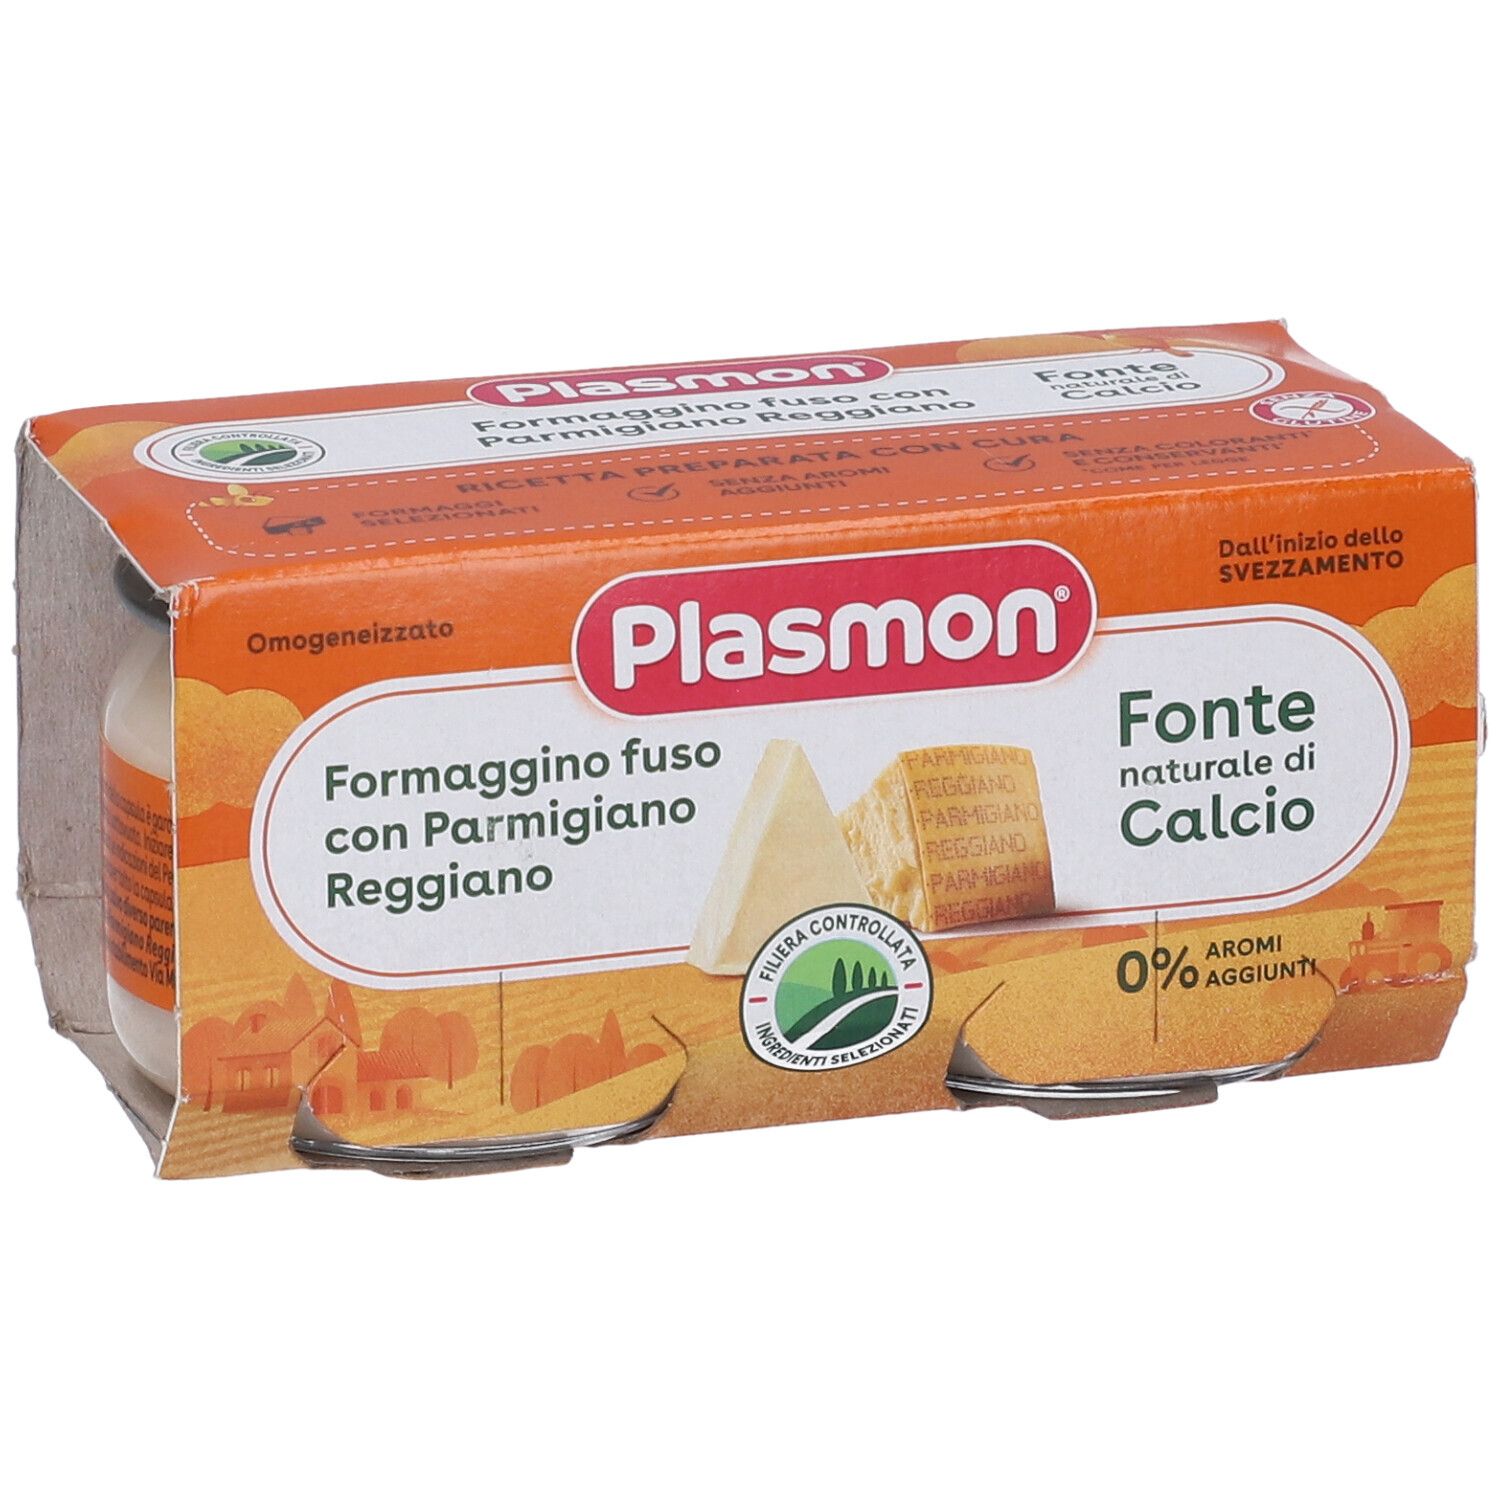 Plasmon® Omogeneizzato Formaggino fuso e Parmigiano Reggiano